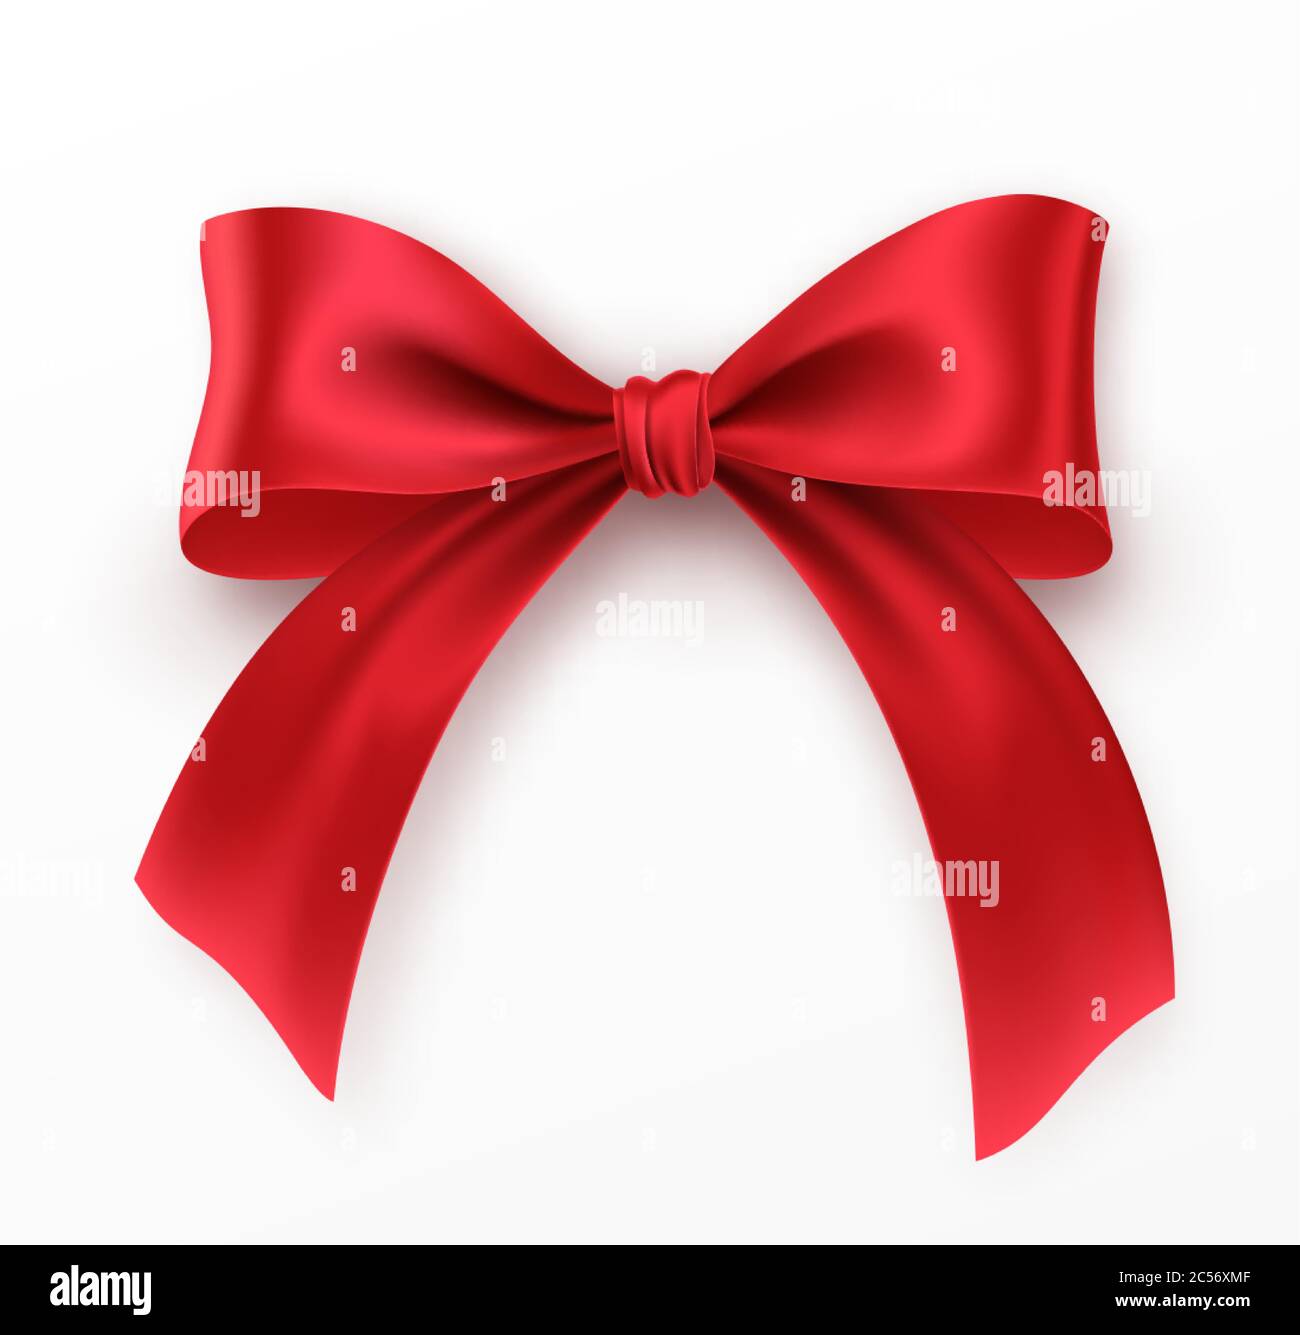 Red Bow e nastro su sfondo bianco. Archetto rosso realistico per il design della decorazione cornice per le vacanze, bordo. Illustrazione vettoriale Illustrazione Vettoriale